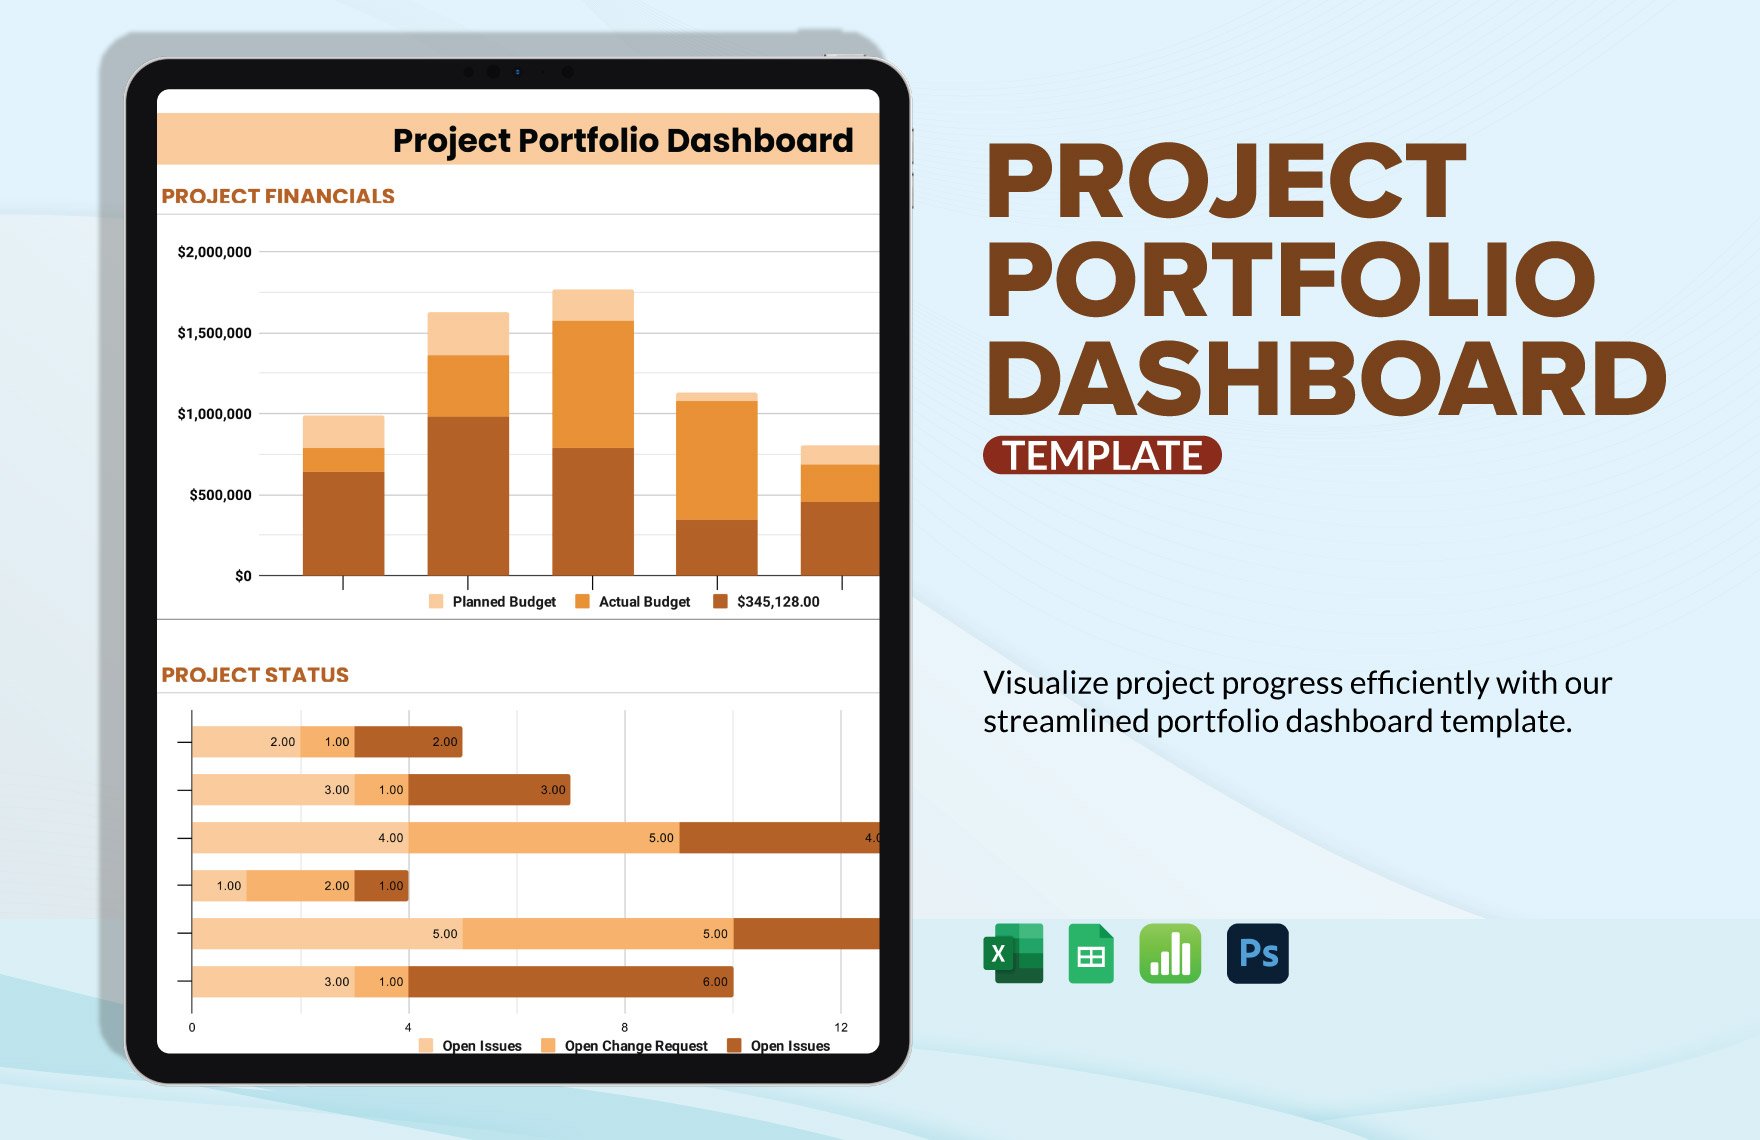 Project Portfolio Dashboard Template